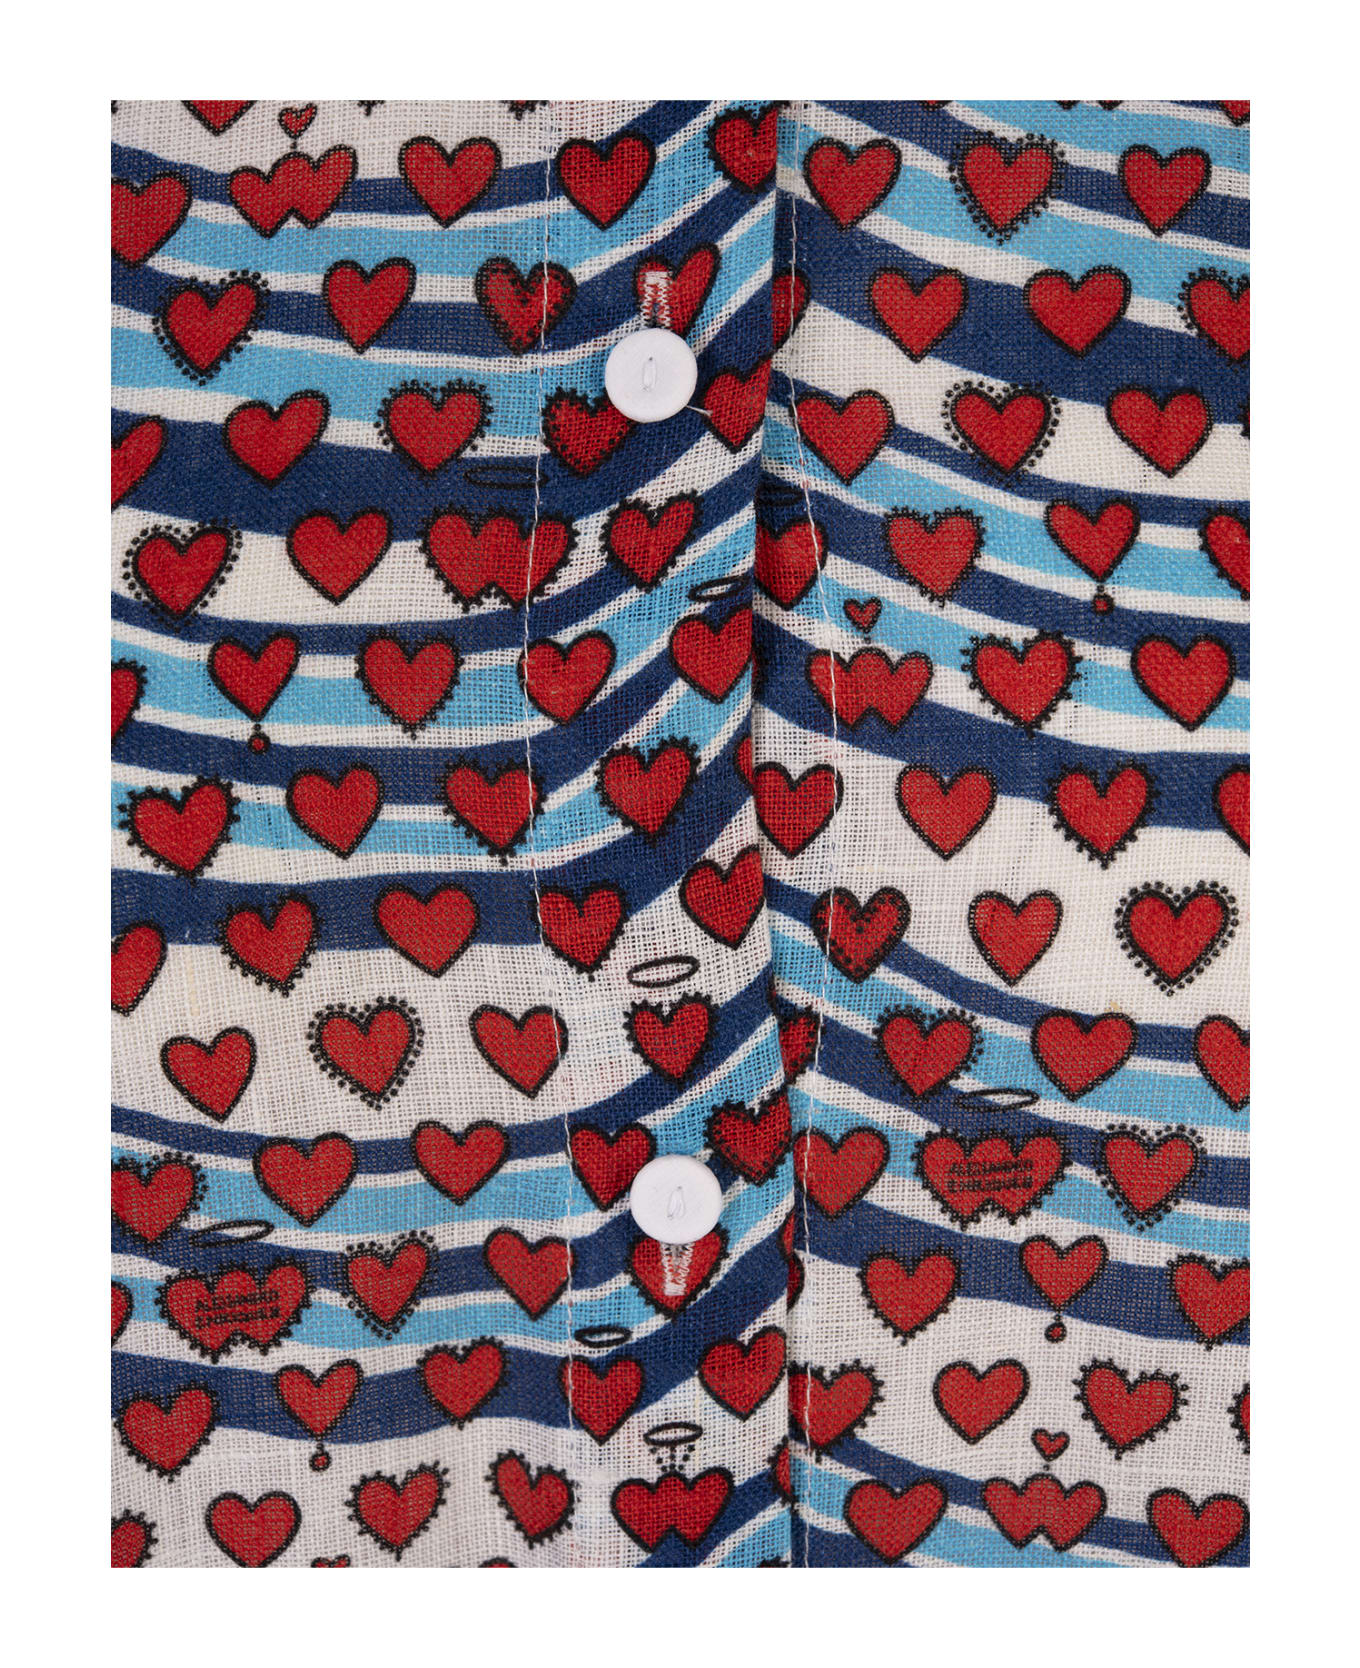 Alessandro Enriquez Long Printed Linen Shirt Dress - Multicolour